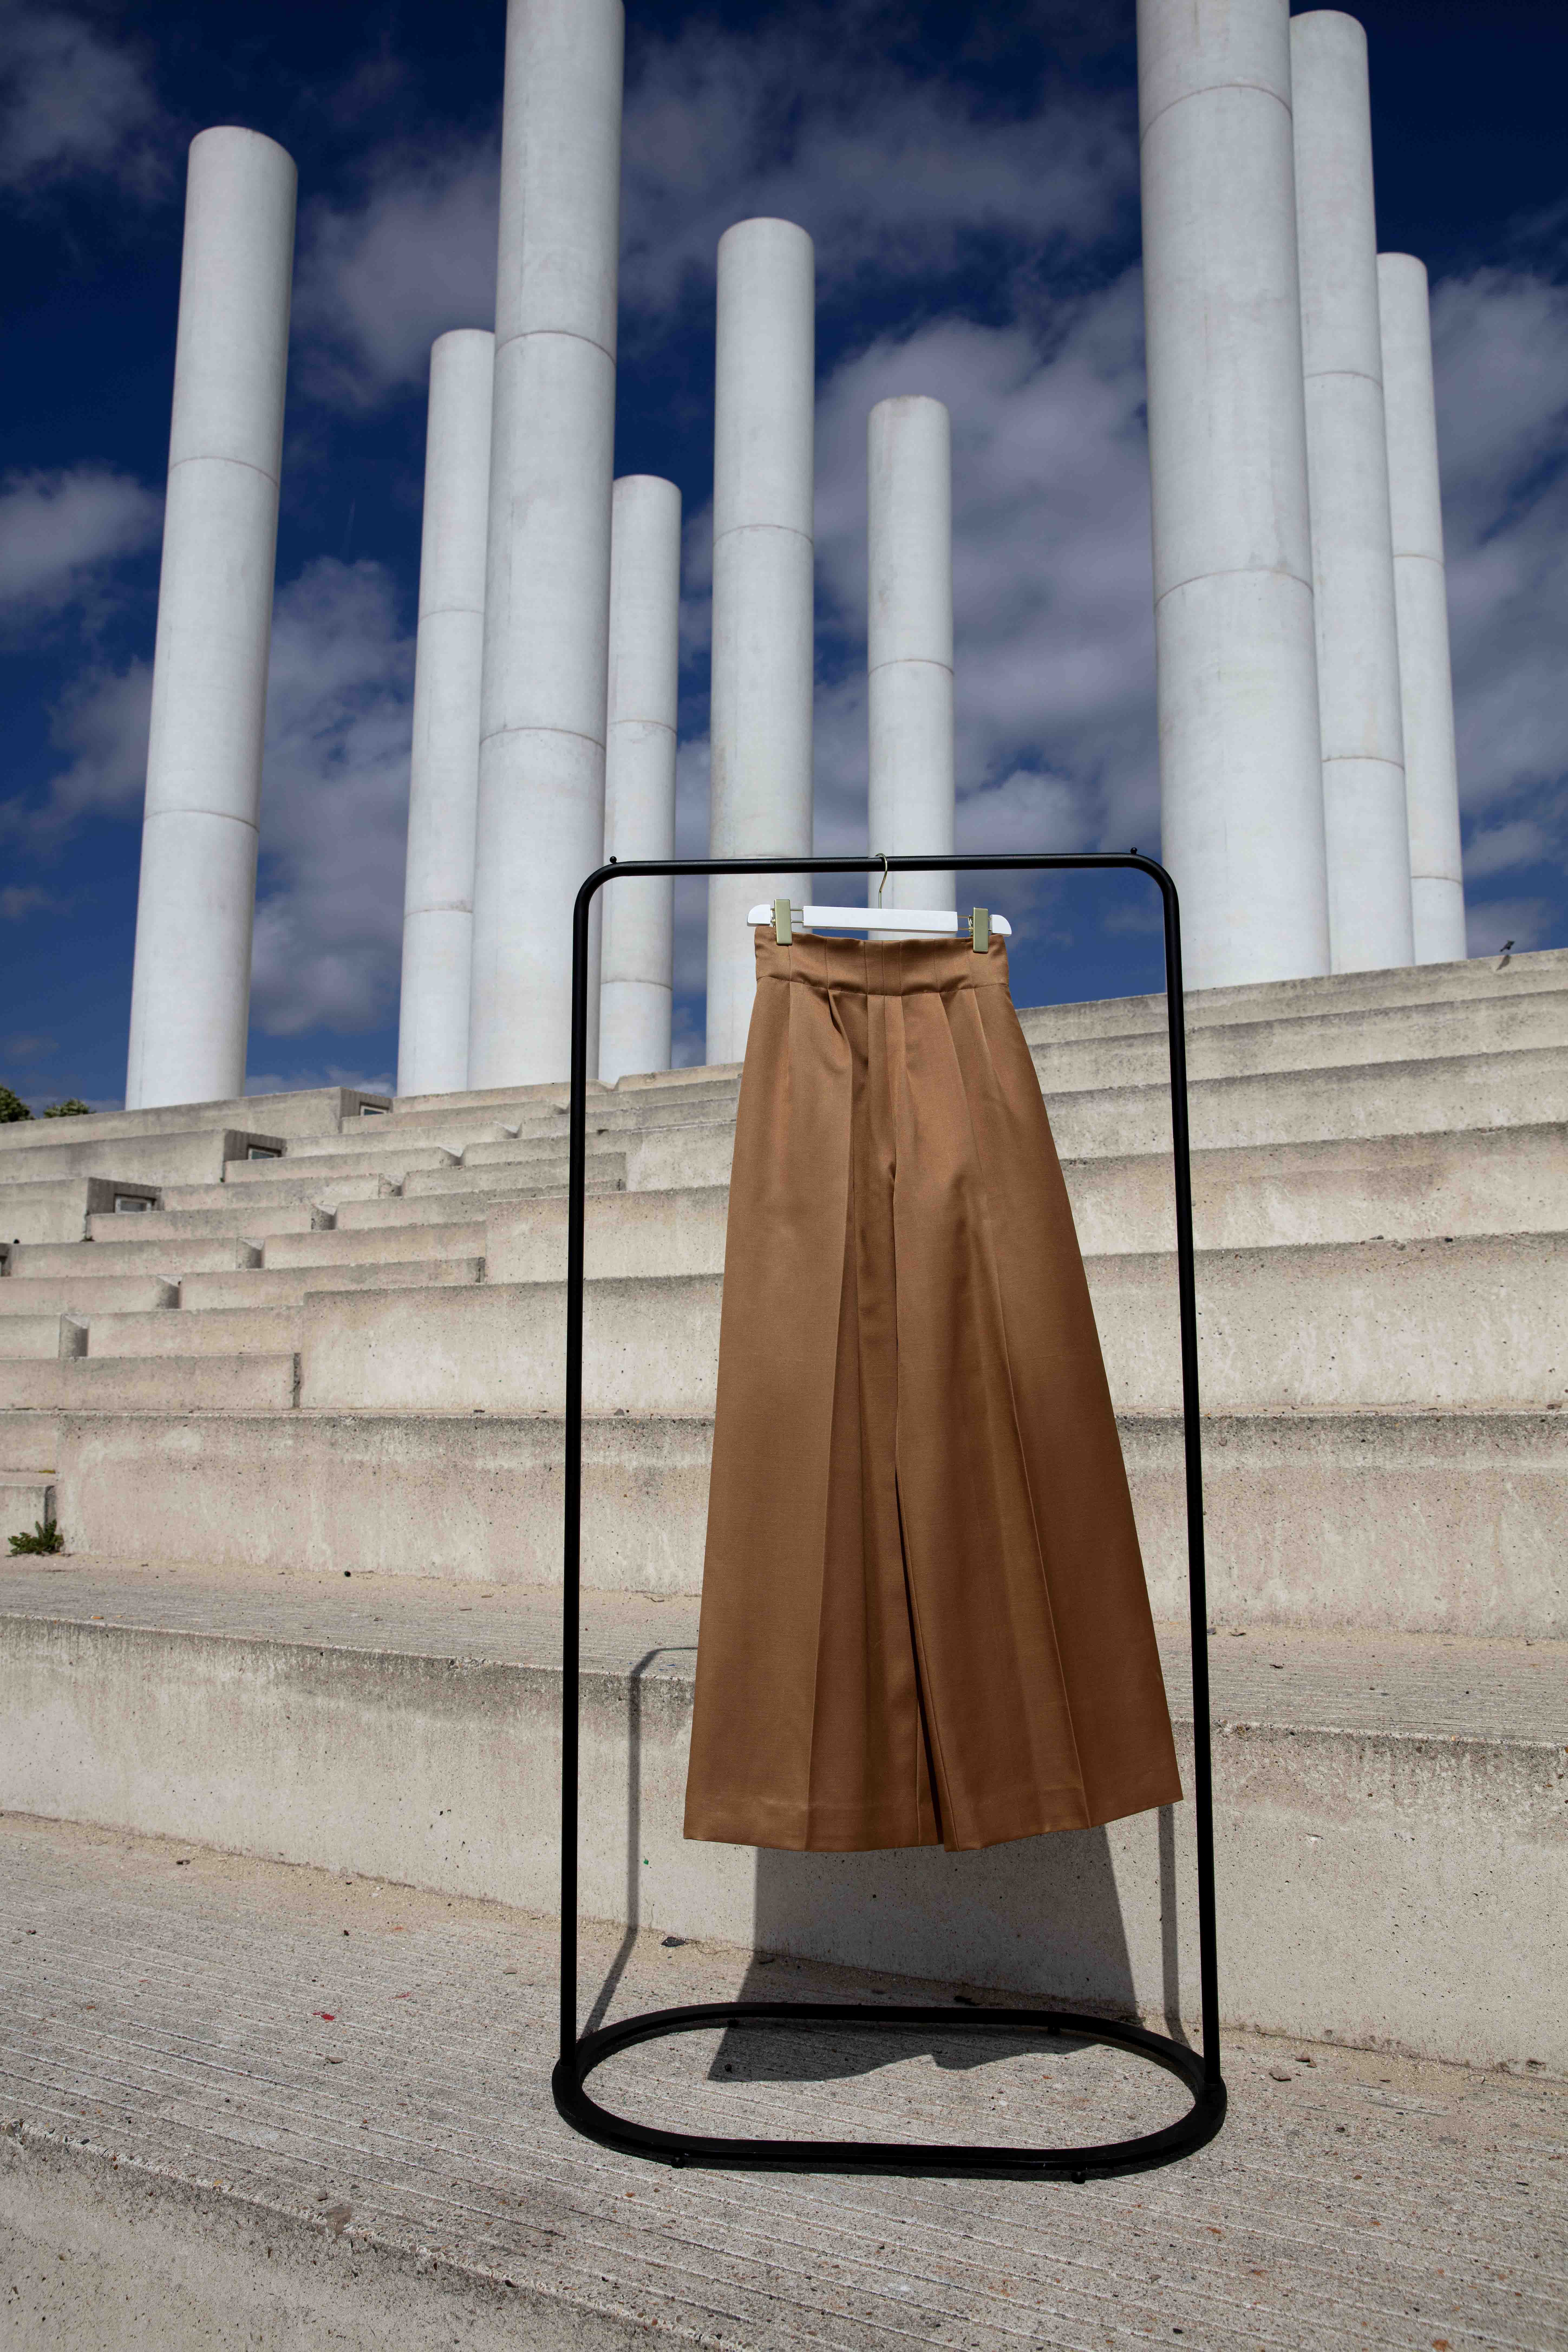 Découvrez Elisa, notre magnifique pantalon bronze plissé à la taille, imaginé et conçu par les deux designers Michele Emanuele et Veronica Marucci au sein de leur atelier parisien.